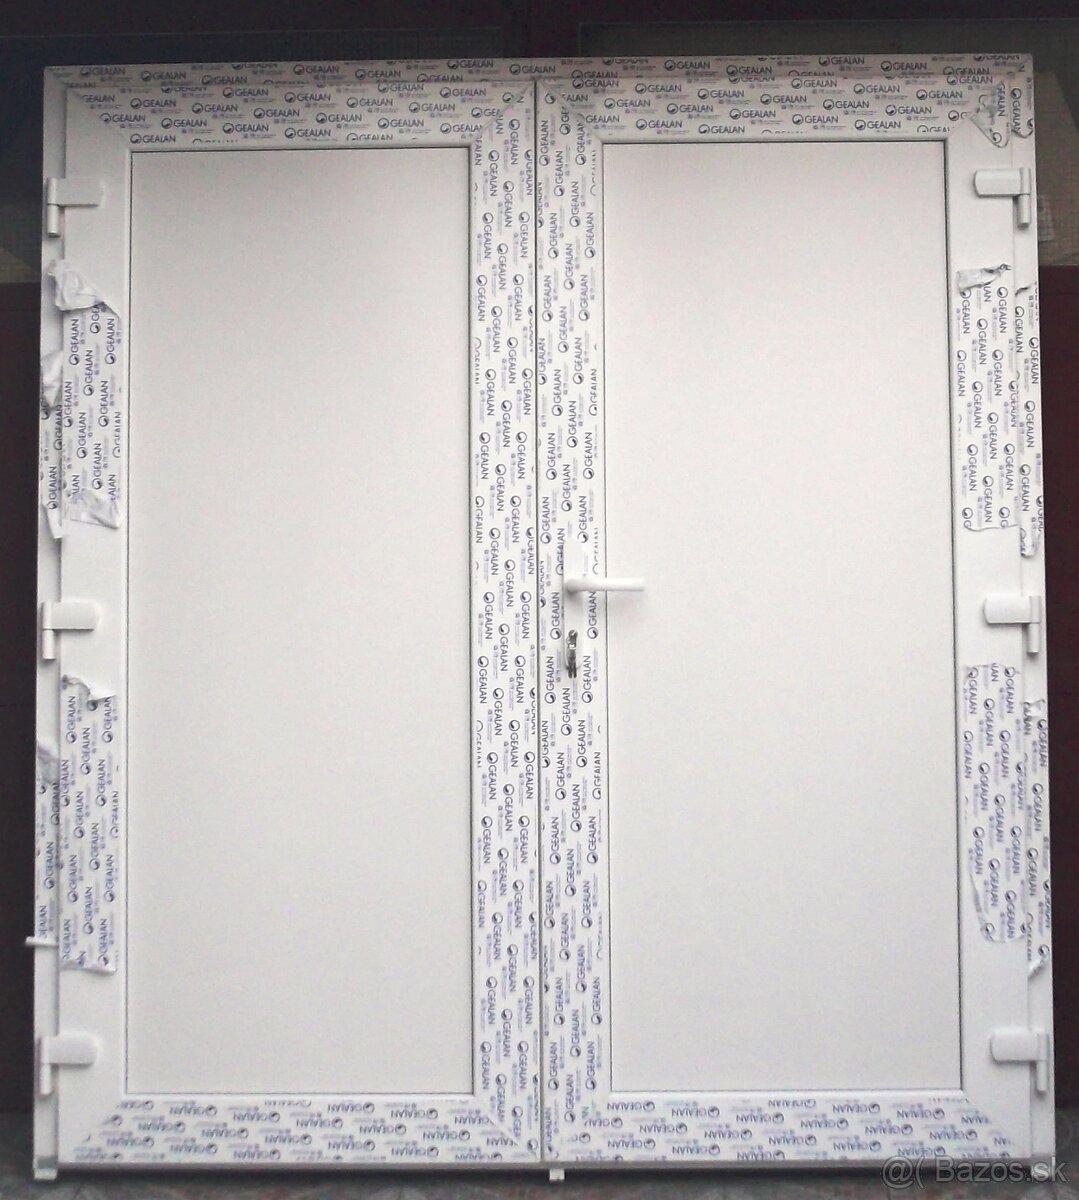 Predám vchodové dvojkrídlové dvere 191cm x 210cm